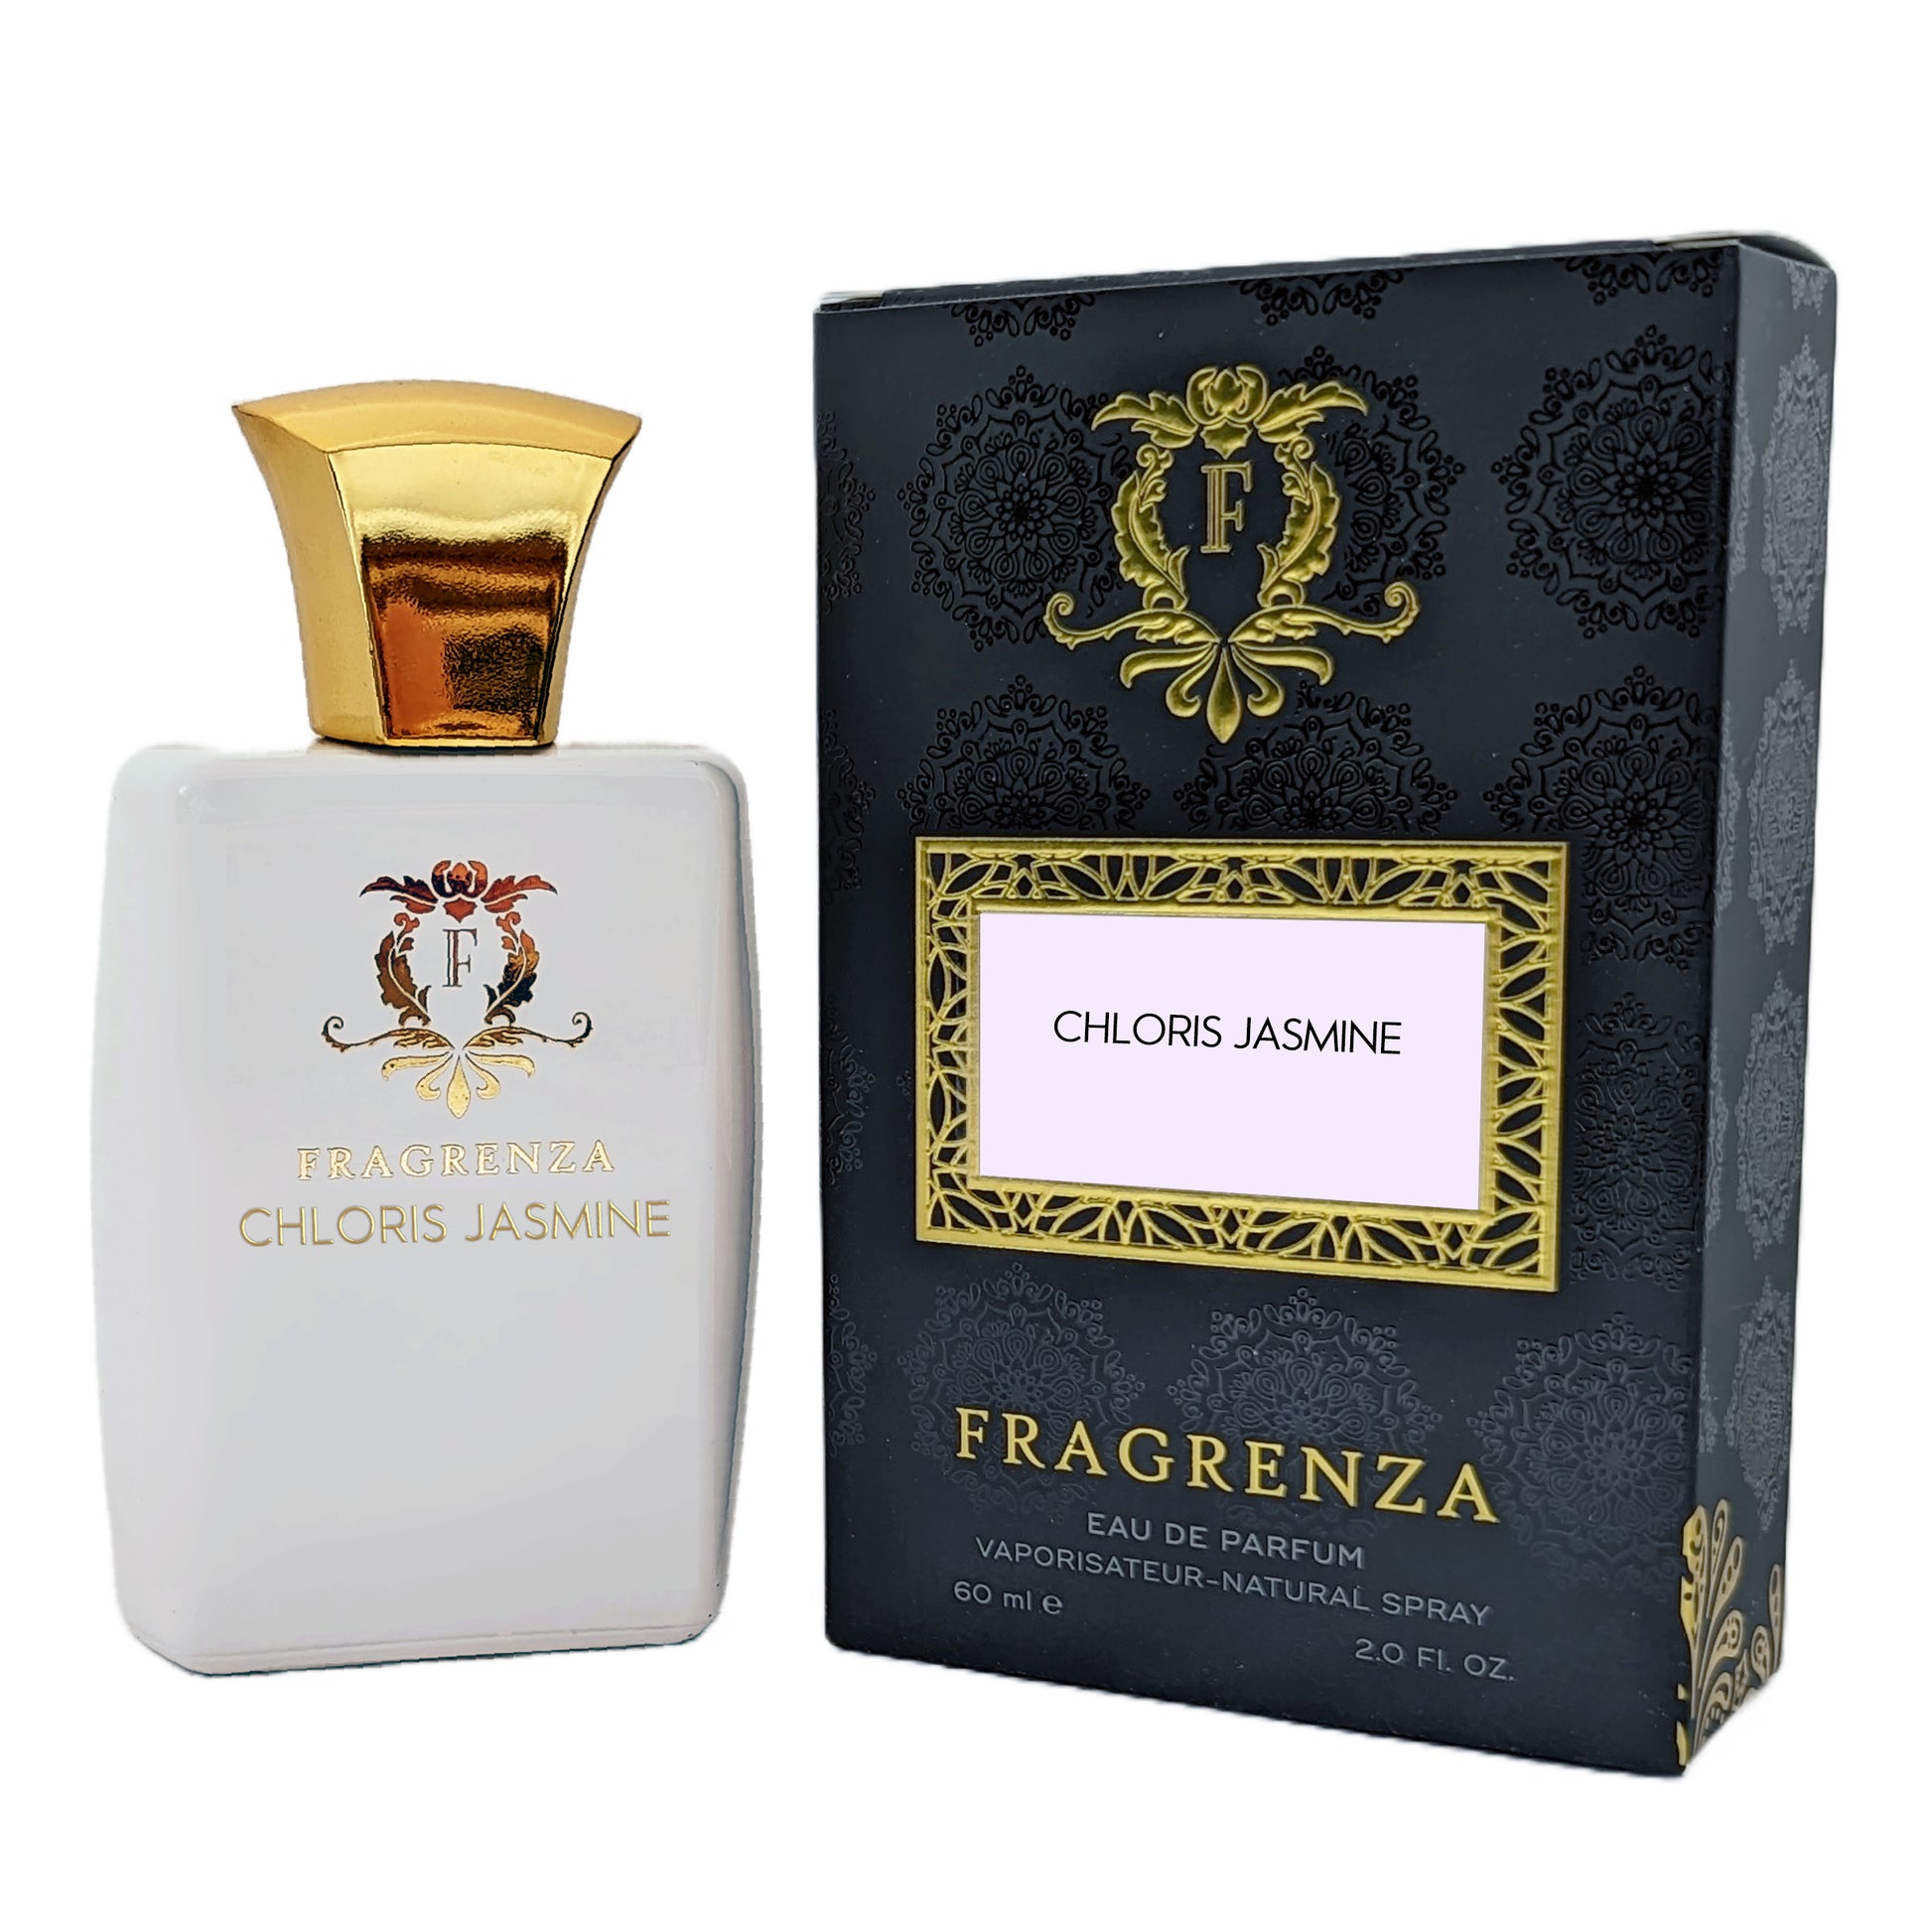 Gucci Flora Gorgeous Jasmine, 100ml, eau de parfum